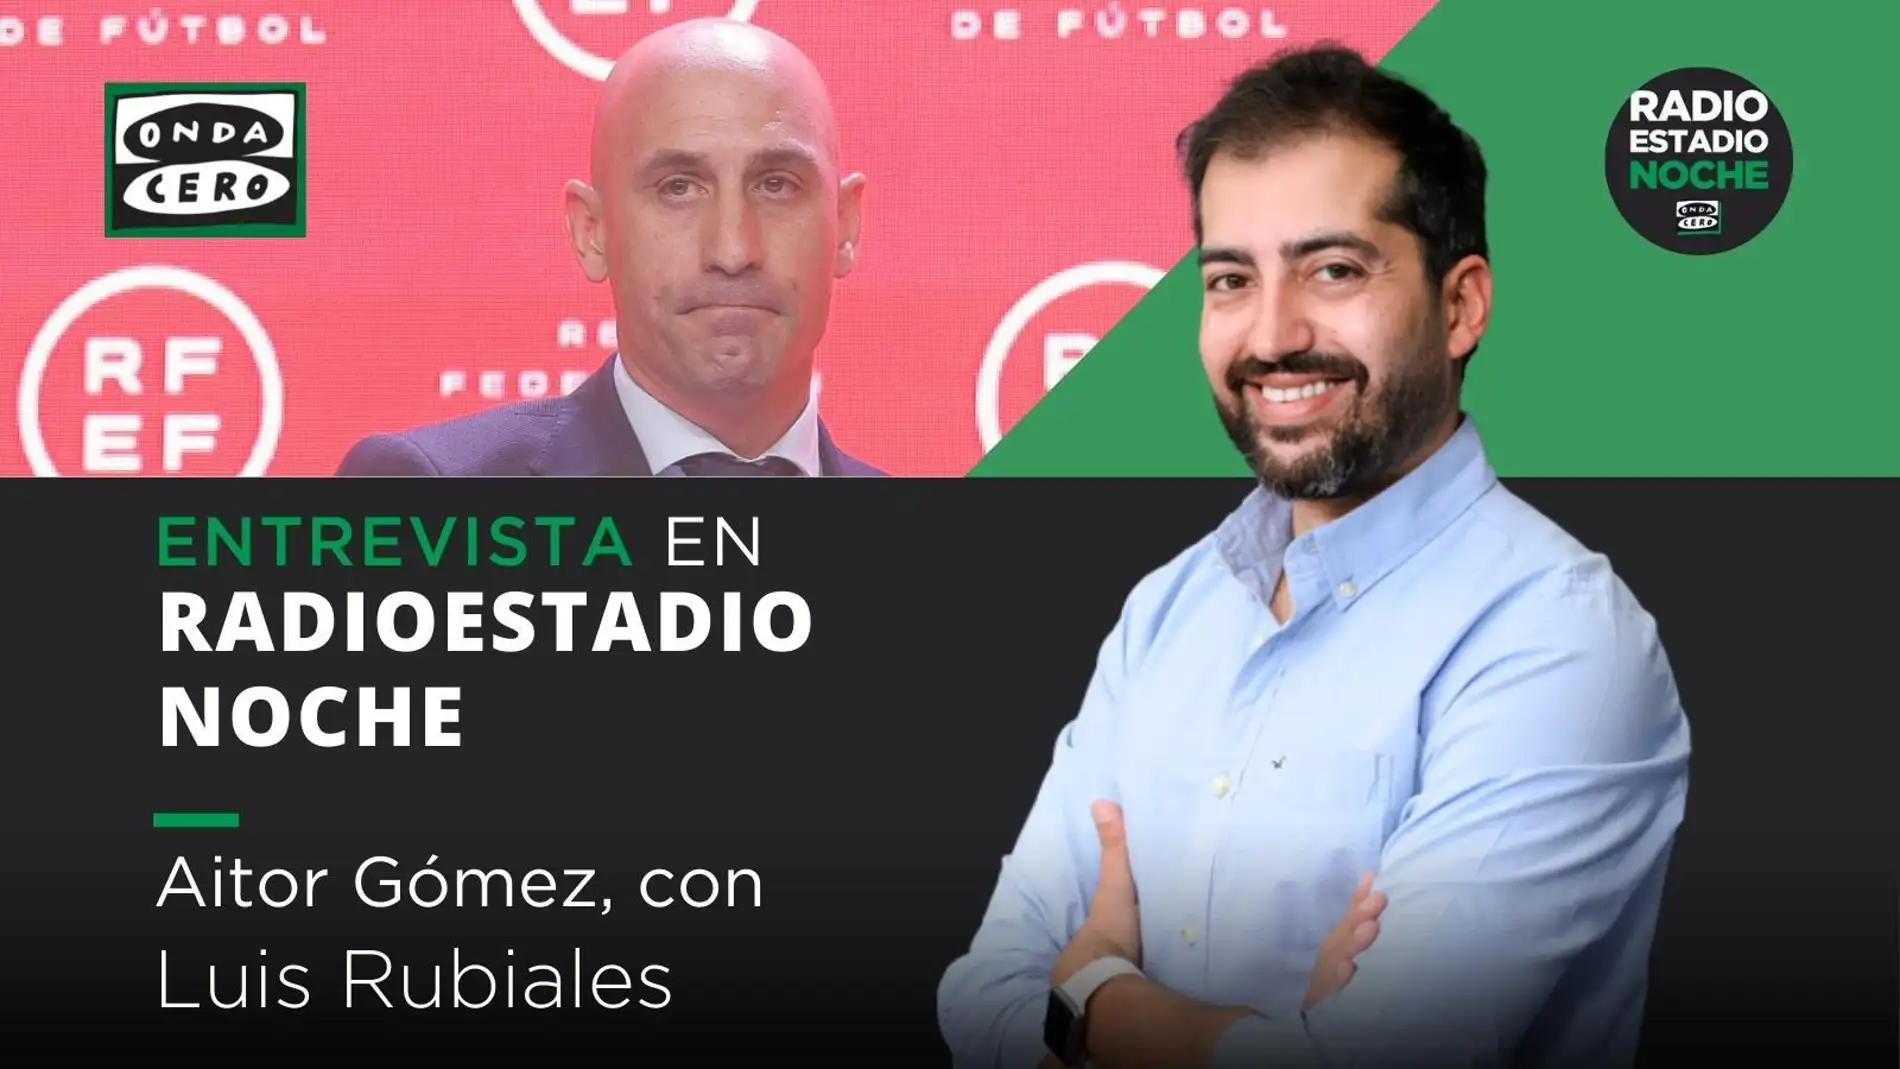 Aitor Gómez entrevista a Luis Rubiales en 'Radioestadio noche' / Onda Cero